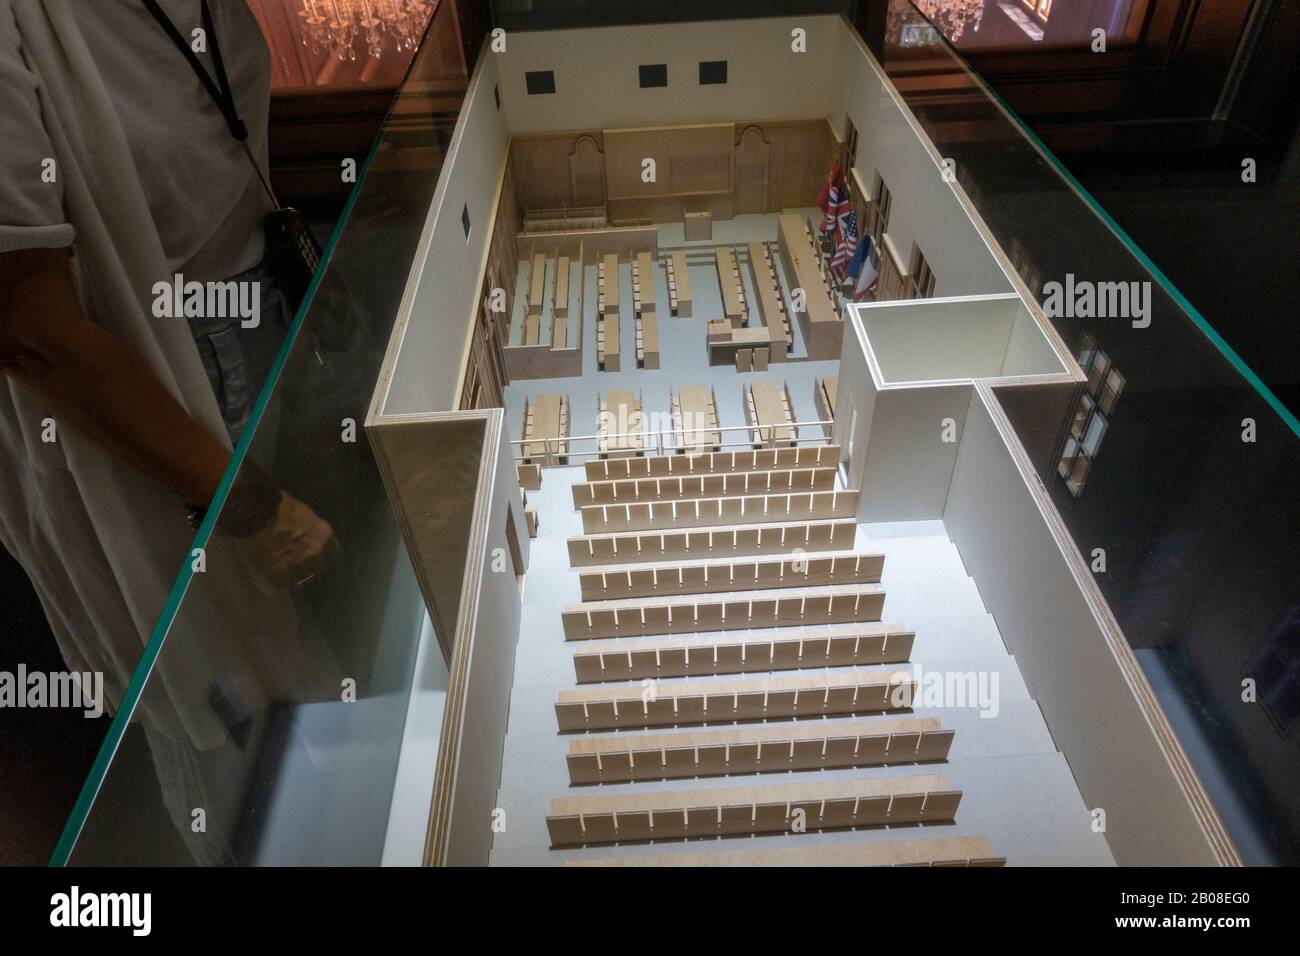 Modell des neu entwickelten Gerichtsgebäudes im Memorium Nürnberg Trials, Nürnberg, Bayern, Deutschland. Stockfoto